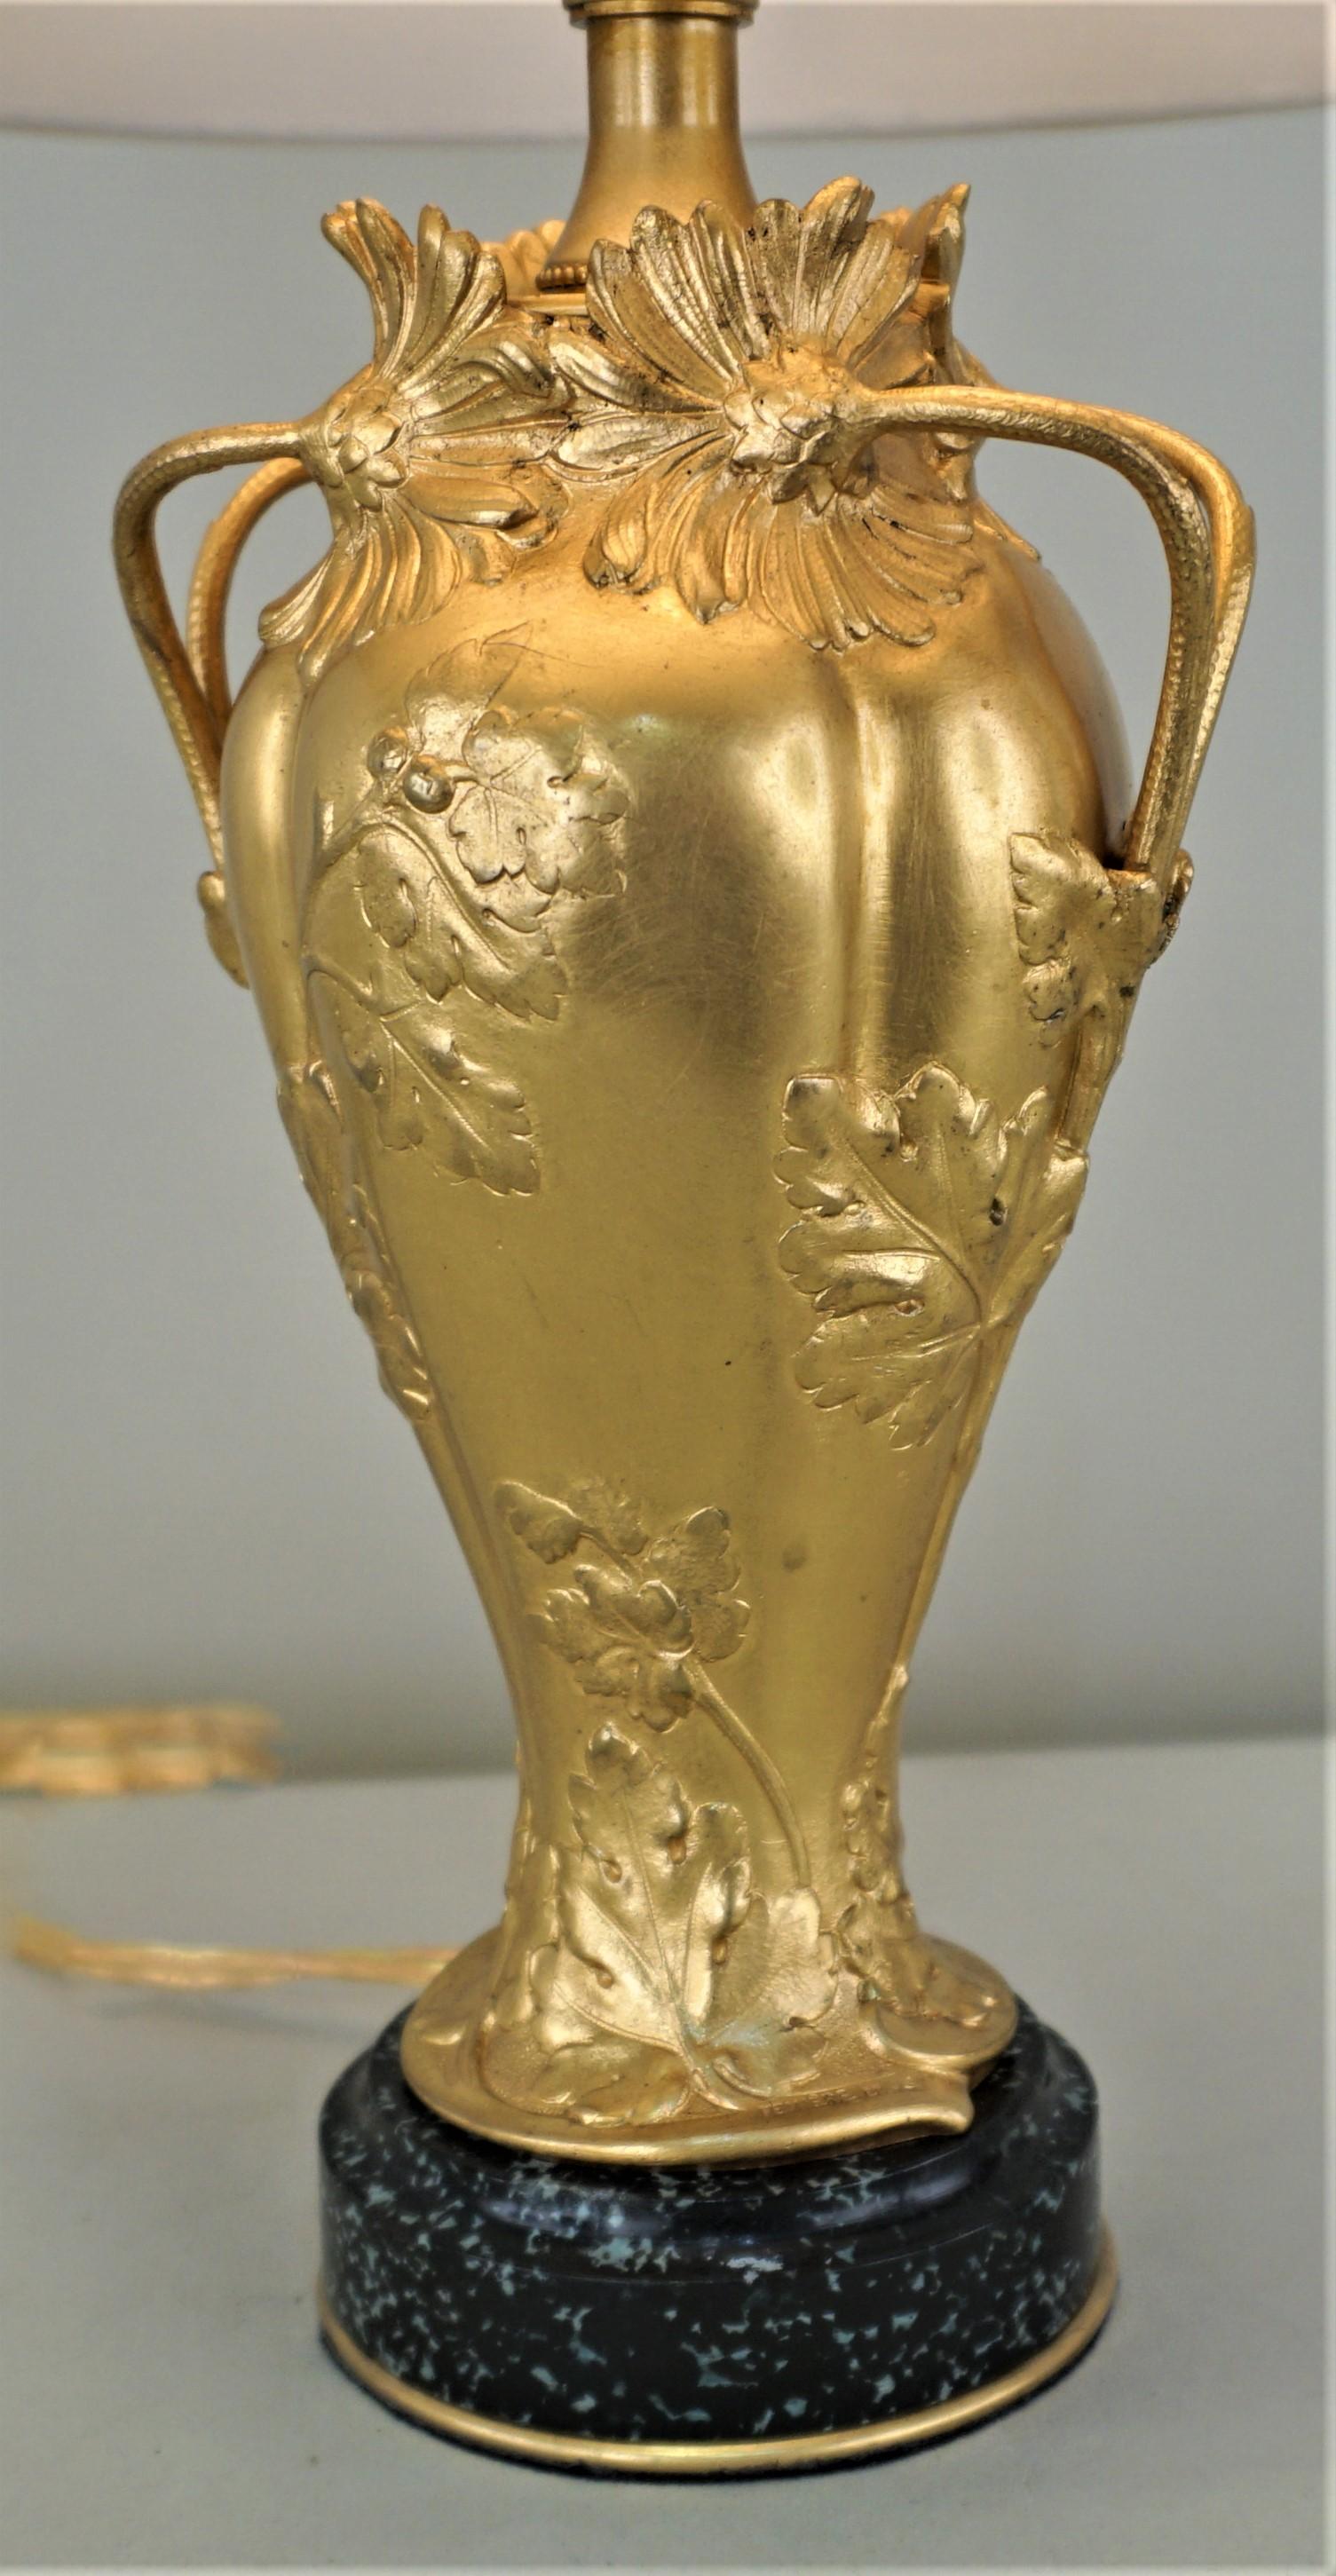 Un vase en bronze doré Art Nouveau qui a été électrifié comme lampe de table et équipé d'un abat-jour en soie.
Ernest Sanglan (sculpture) Fummiere-Gavignot-Thiebaut Freres (fonderie)
La hauteur inclut l'abat-jour.